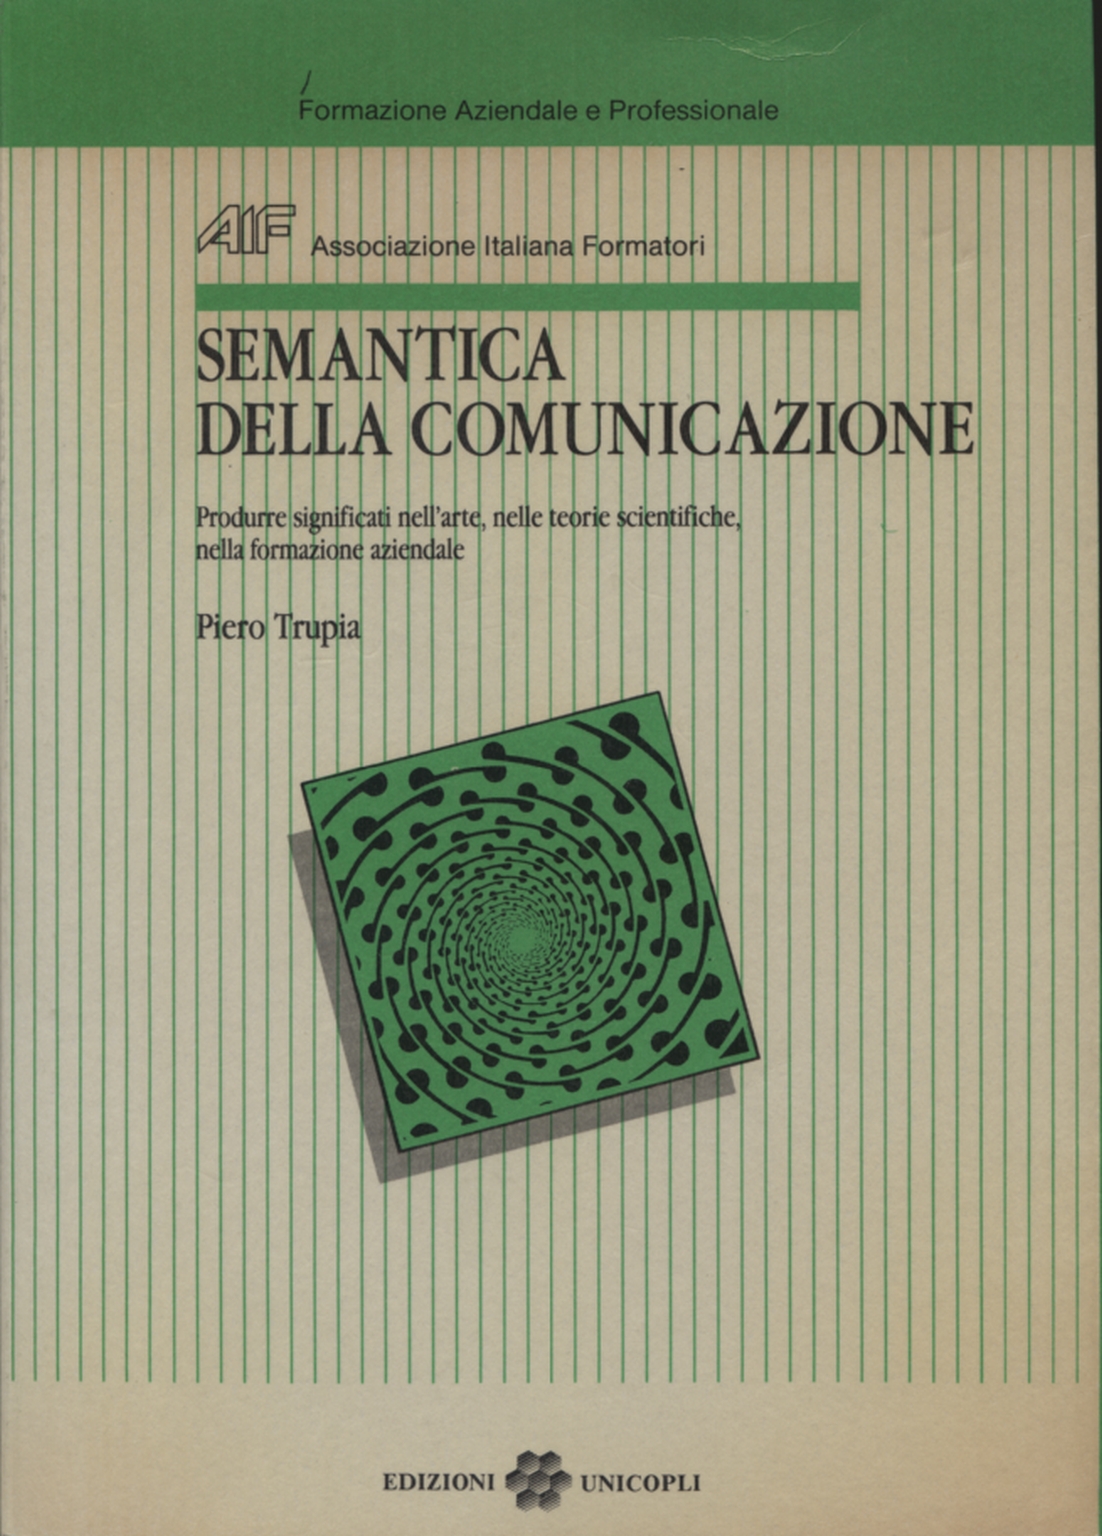 Semantica della comunicazione, Piero Trupia